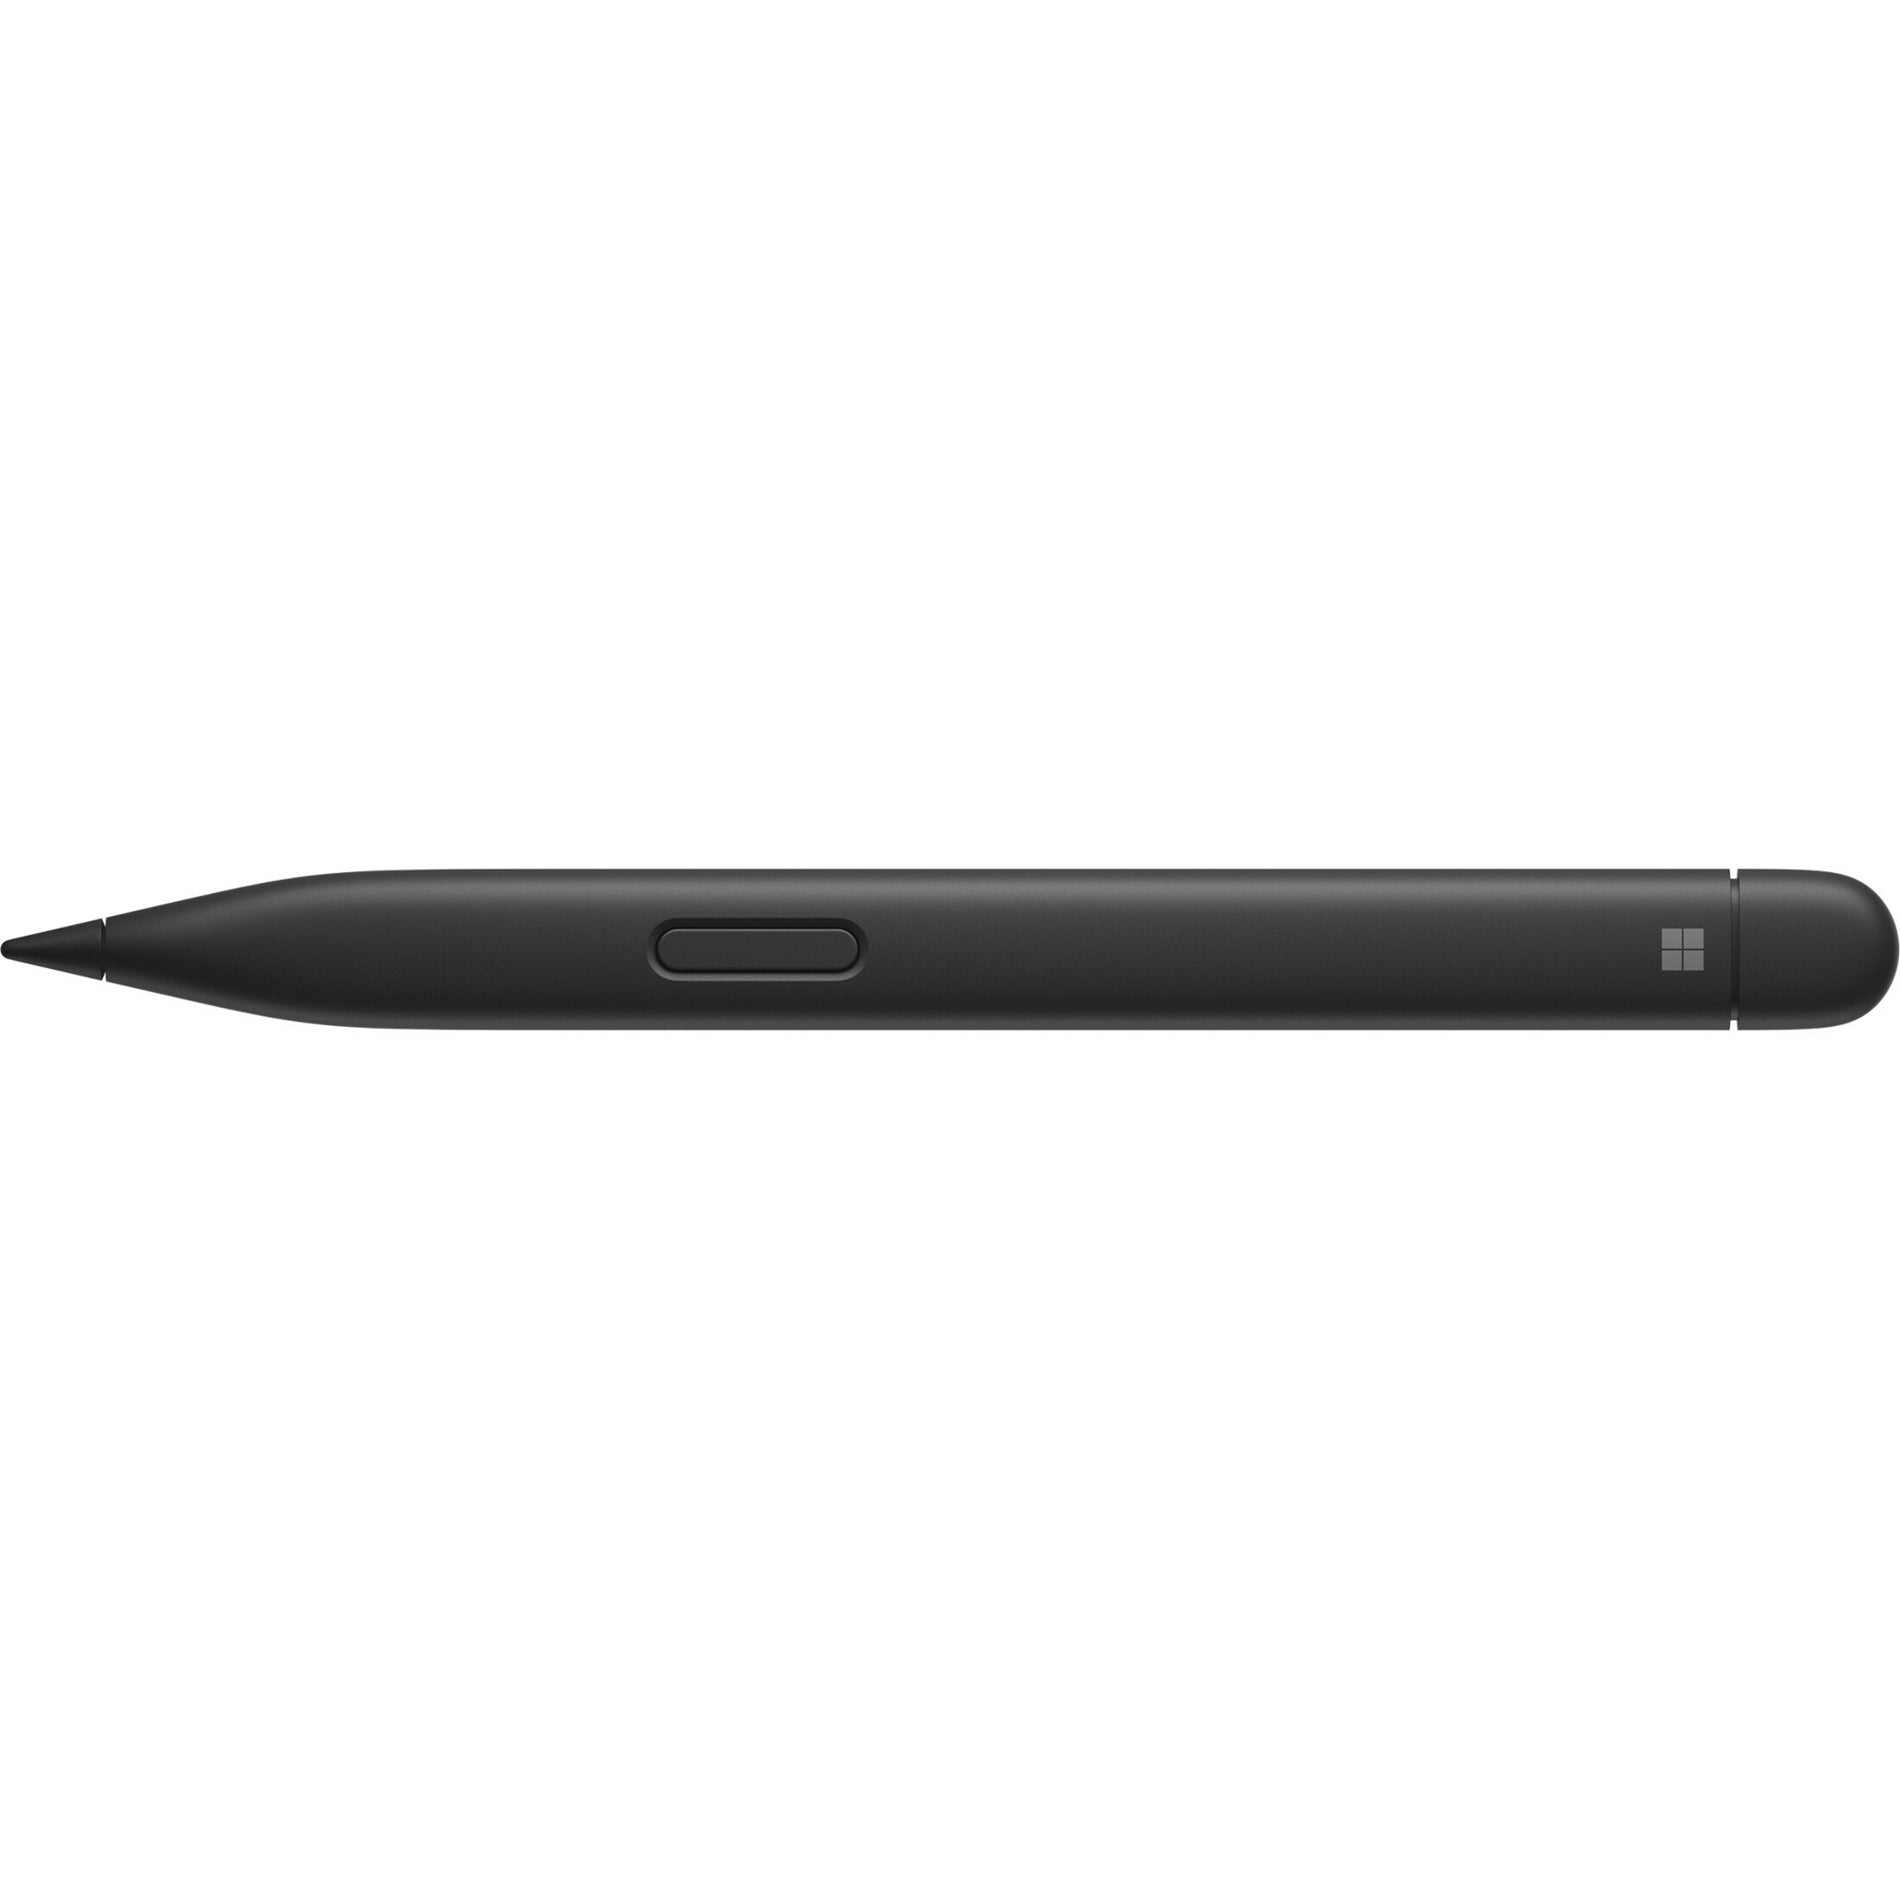 マイクロソフト 8WX-00001 Surface Slim Pen 2 スタイラス、Bluetooth、4096 圧力レベル、15 時間のバッテリー寿命